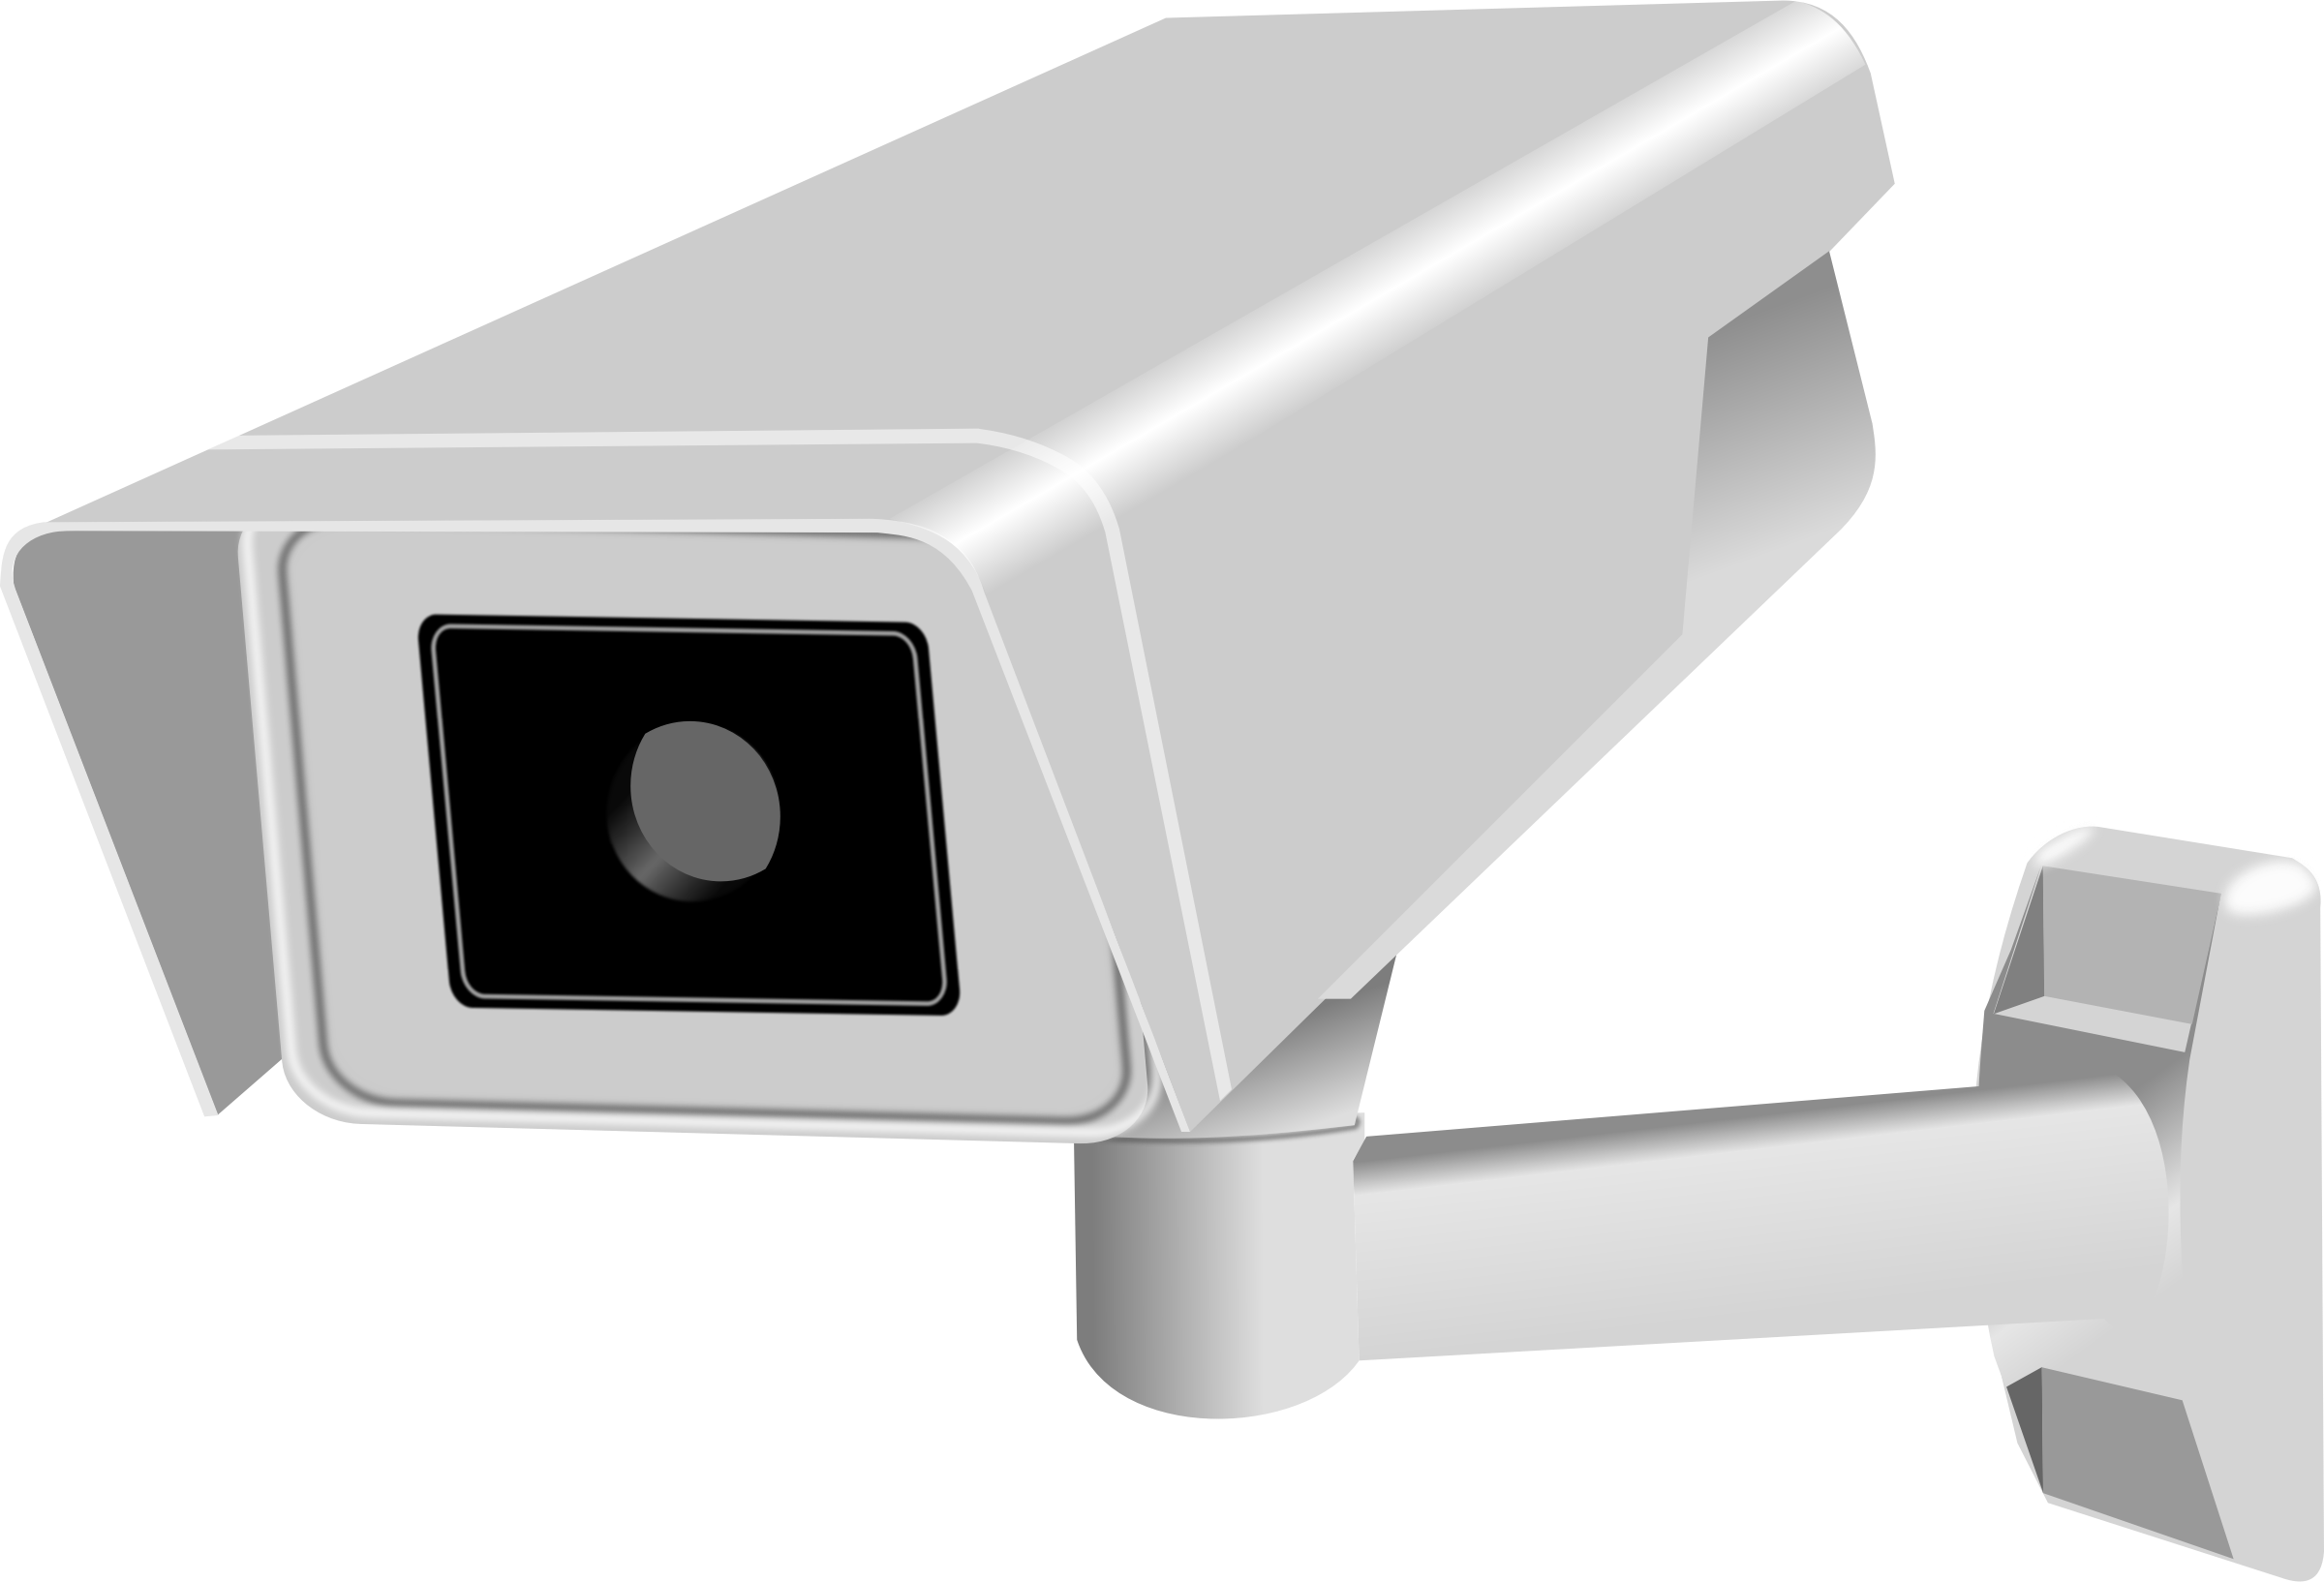 Security camera vector.